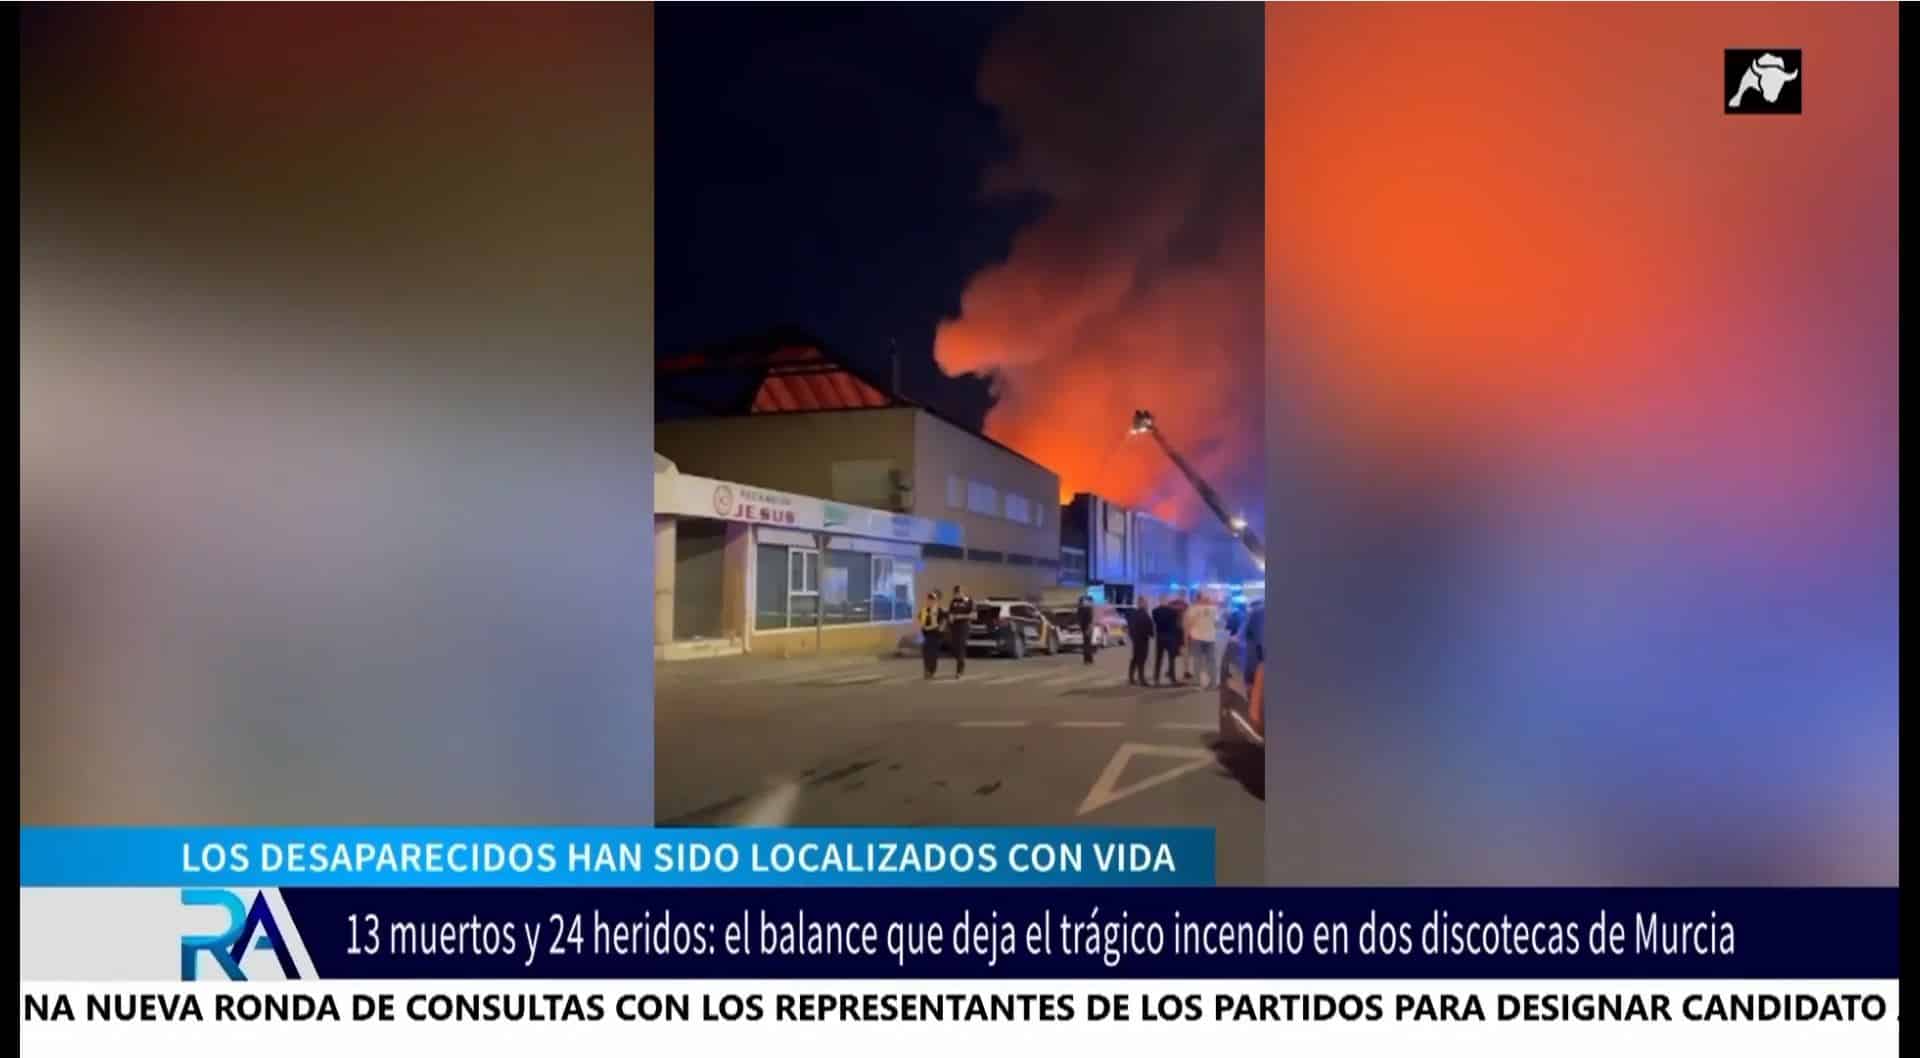 La fatídica fiesta en Murcia que acabó envuelta en caos y llamas: 13 muertos y 24 heridos atrapados a más de 1.000 grados